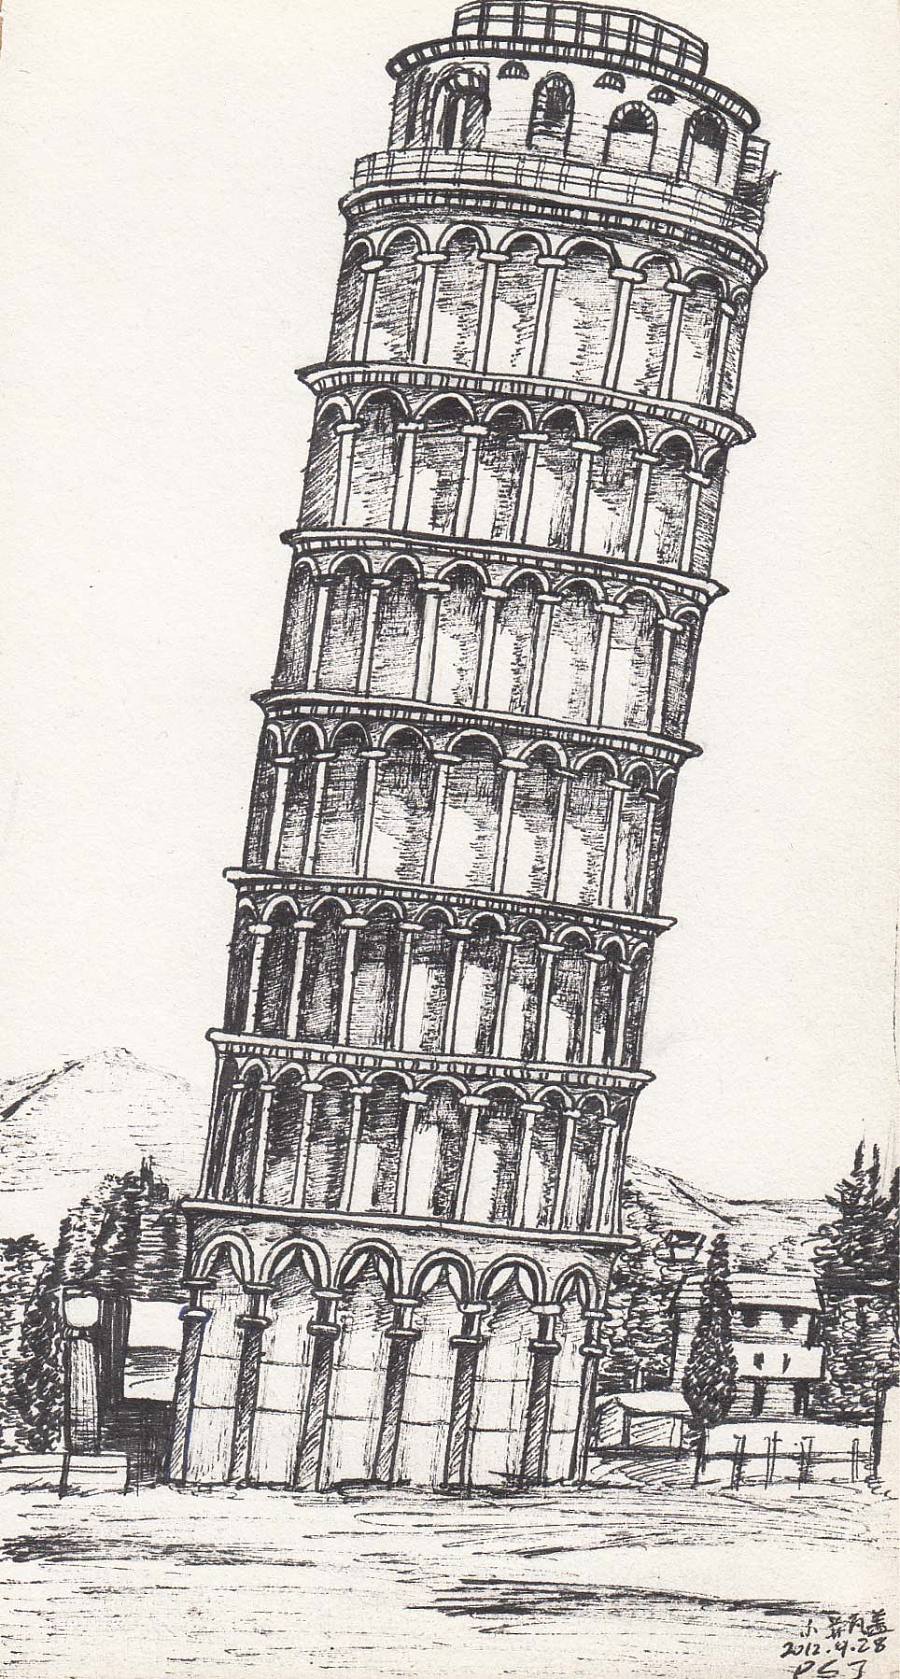 比萨斜塔是意大利比萨城大教堂的独立式钟楼,位于意大利托斯卡纳省